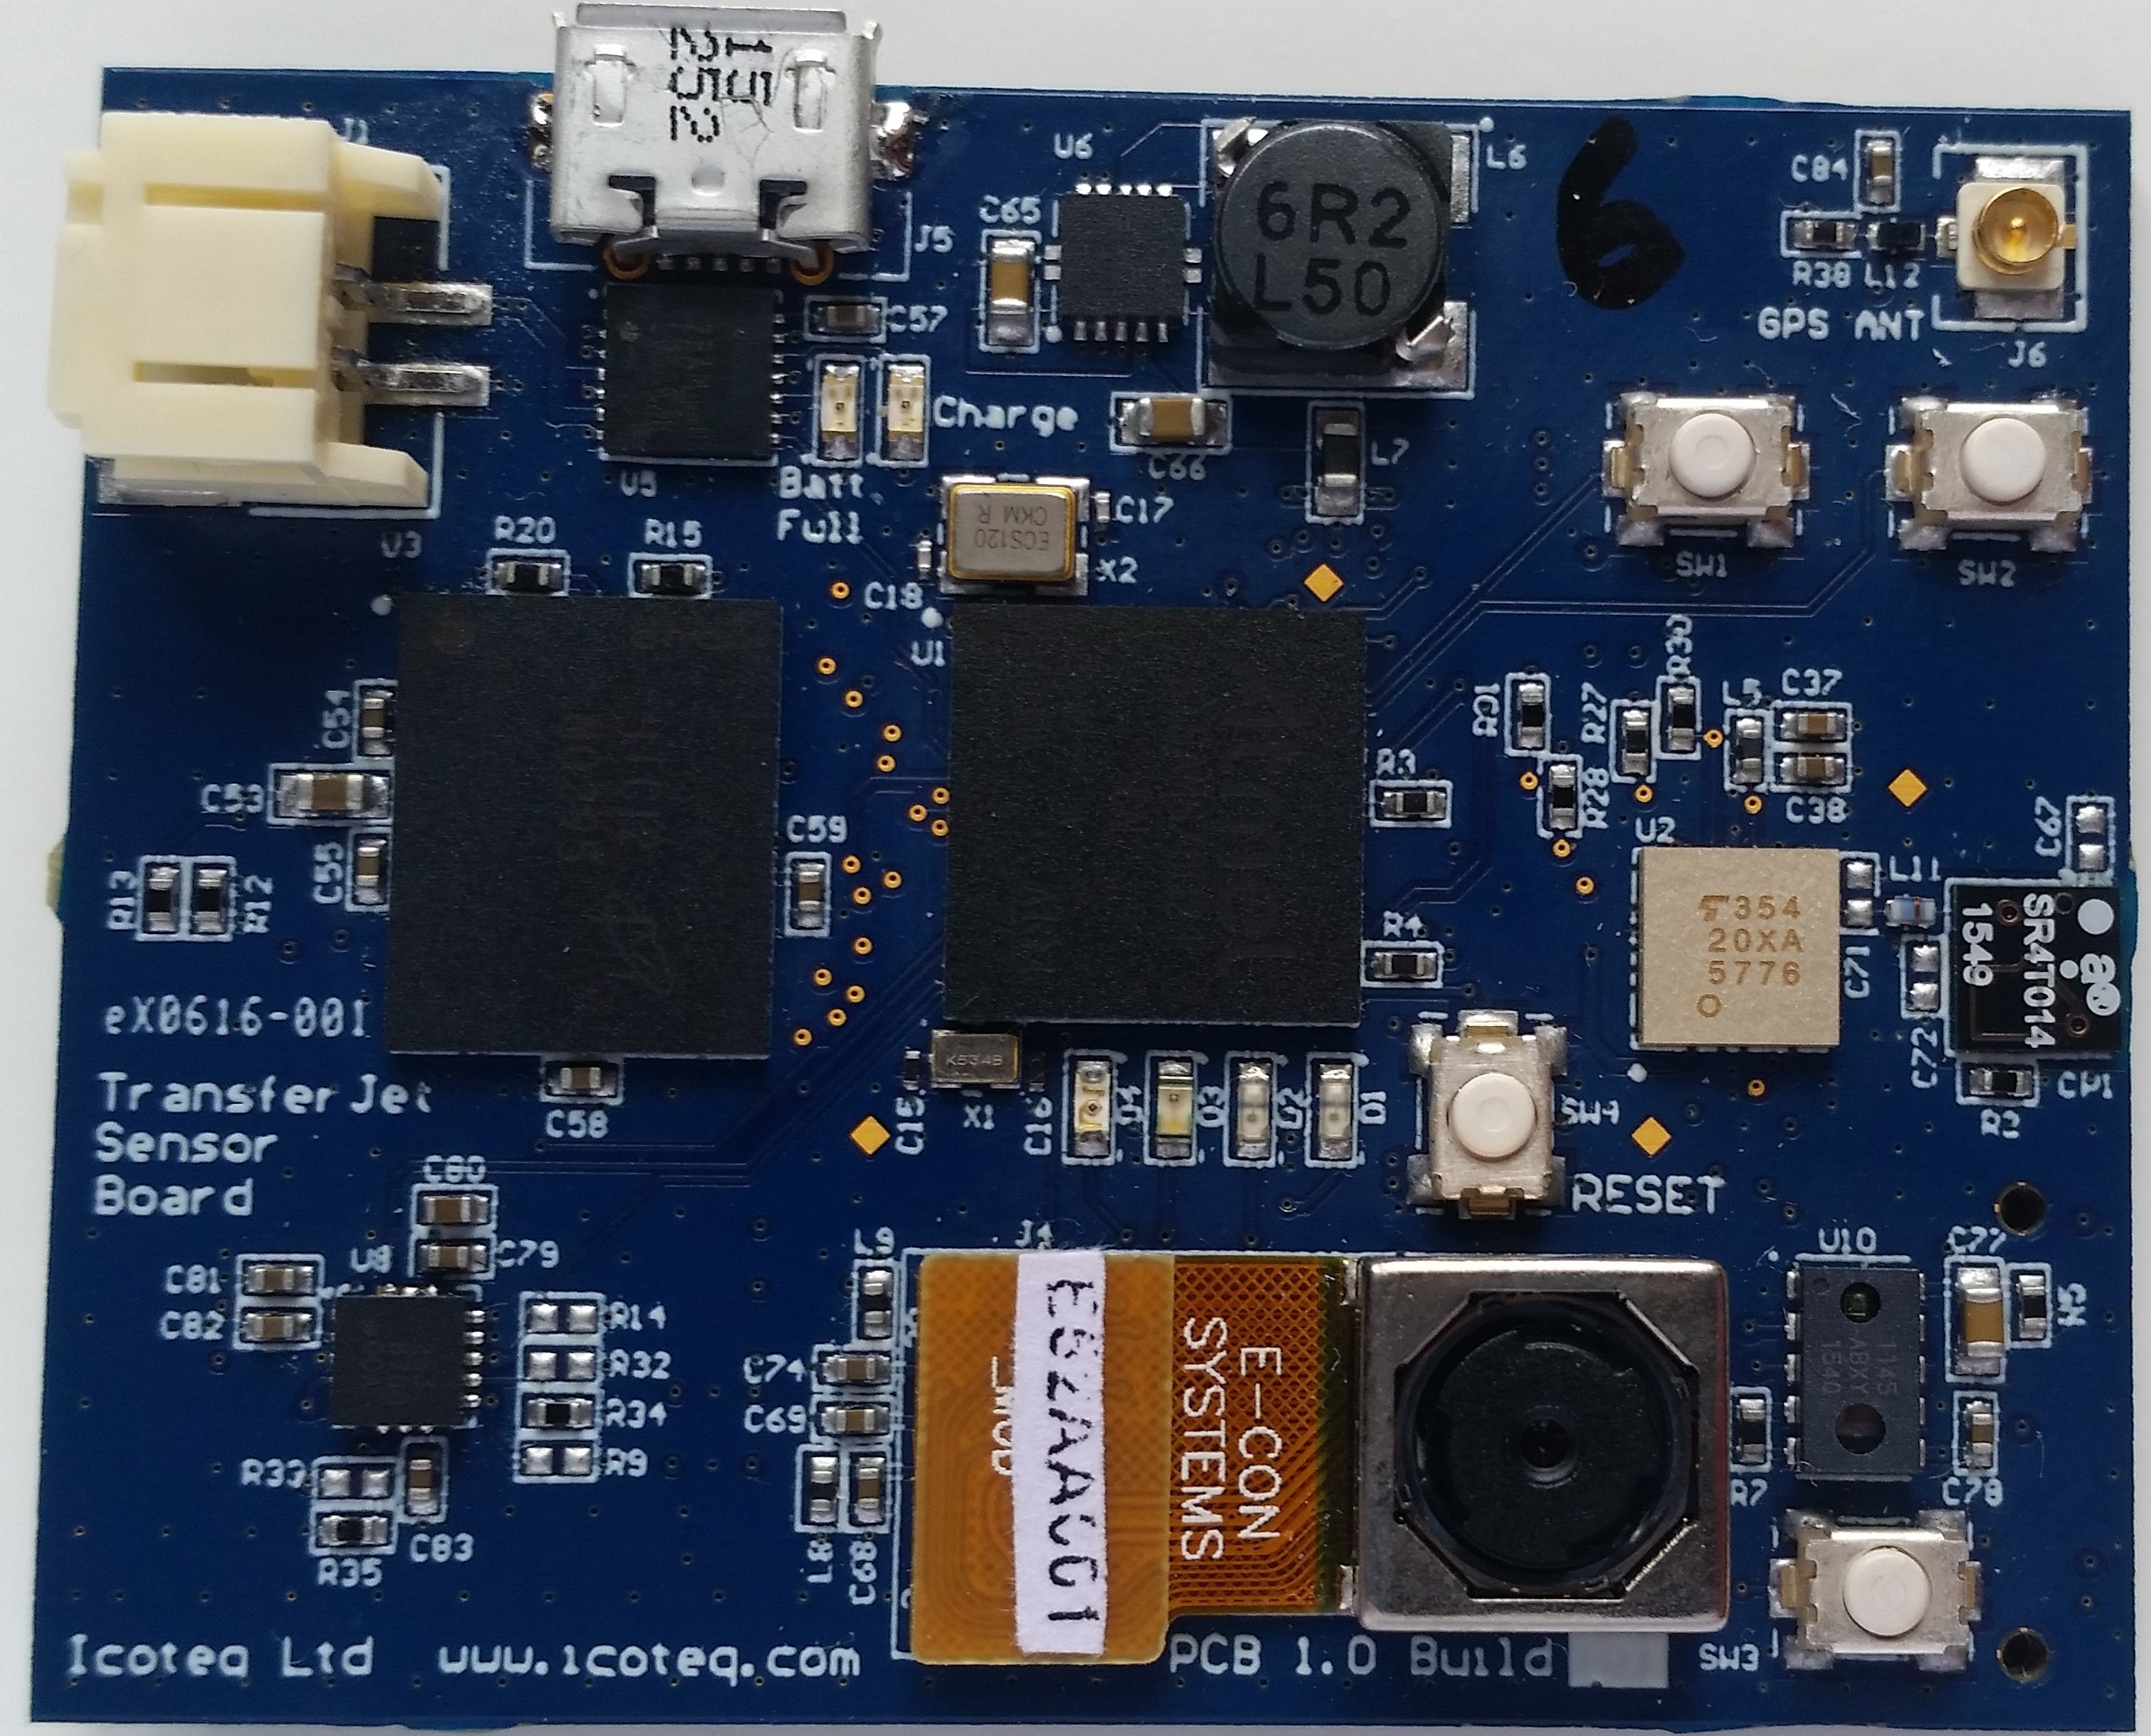 Icoteq sensor board for TransferJet high speed data